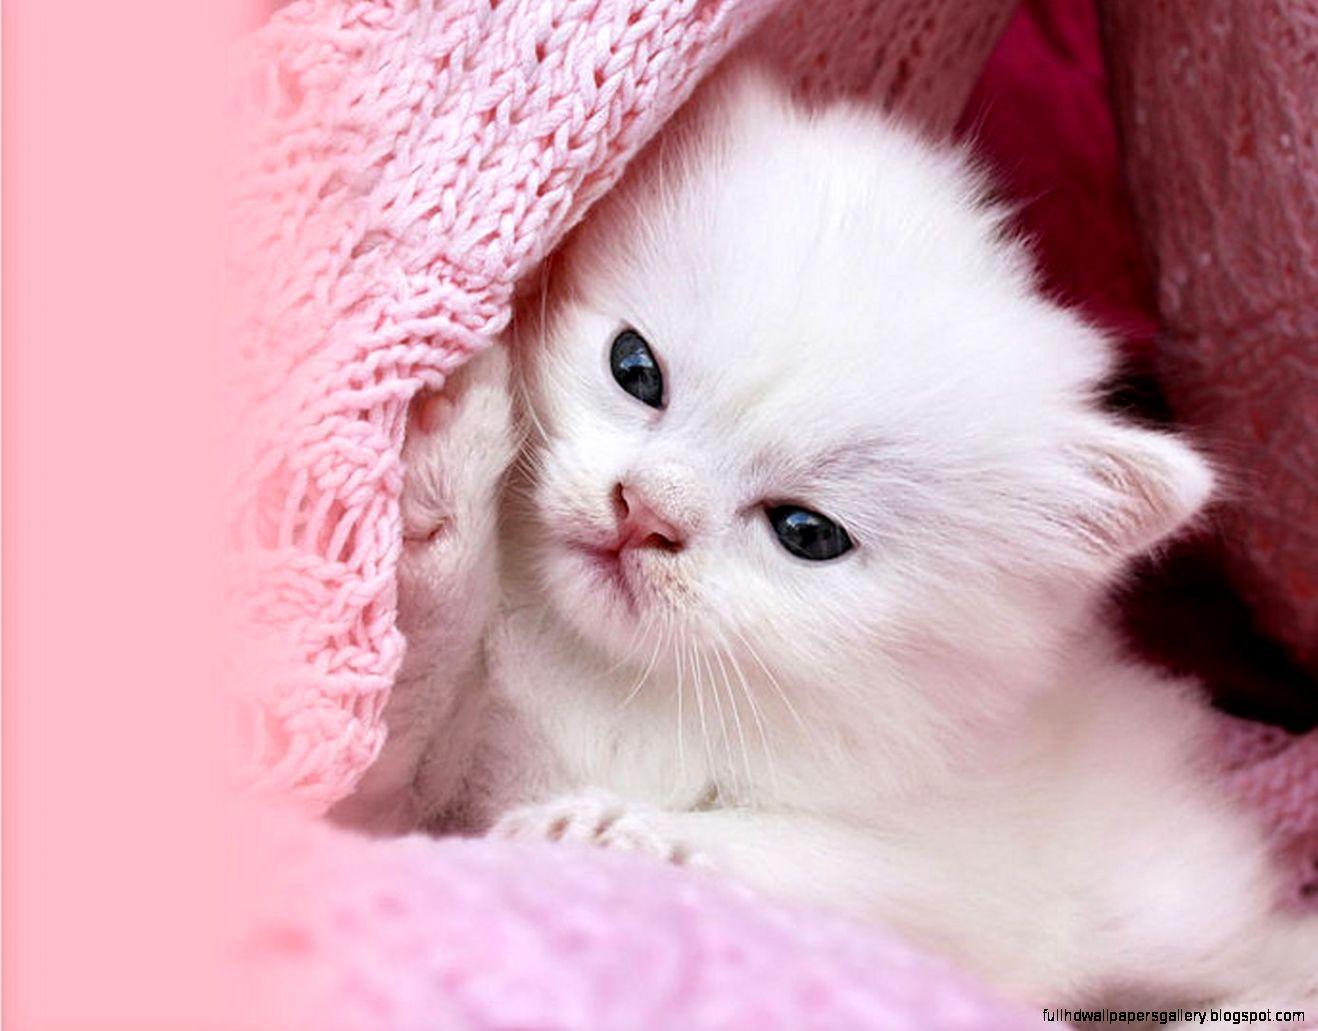 Bạn yêu mỗi hình ảnh đáng yêu và độc đáo? Hãy xem thêm bức ảnh Mèo hồng dễ thương này! Mèo của chúng ta đã được thiết kế đặc biệt với màu hồng tươi sáng và sẽ chắc chắn khiến bạn vừa cười vừa cảm thấy thư giãn.